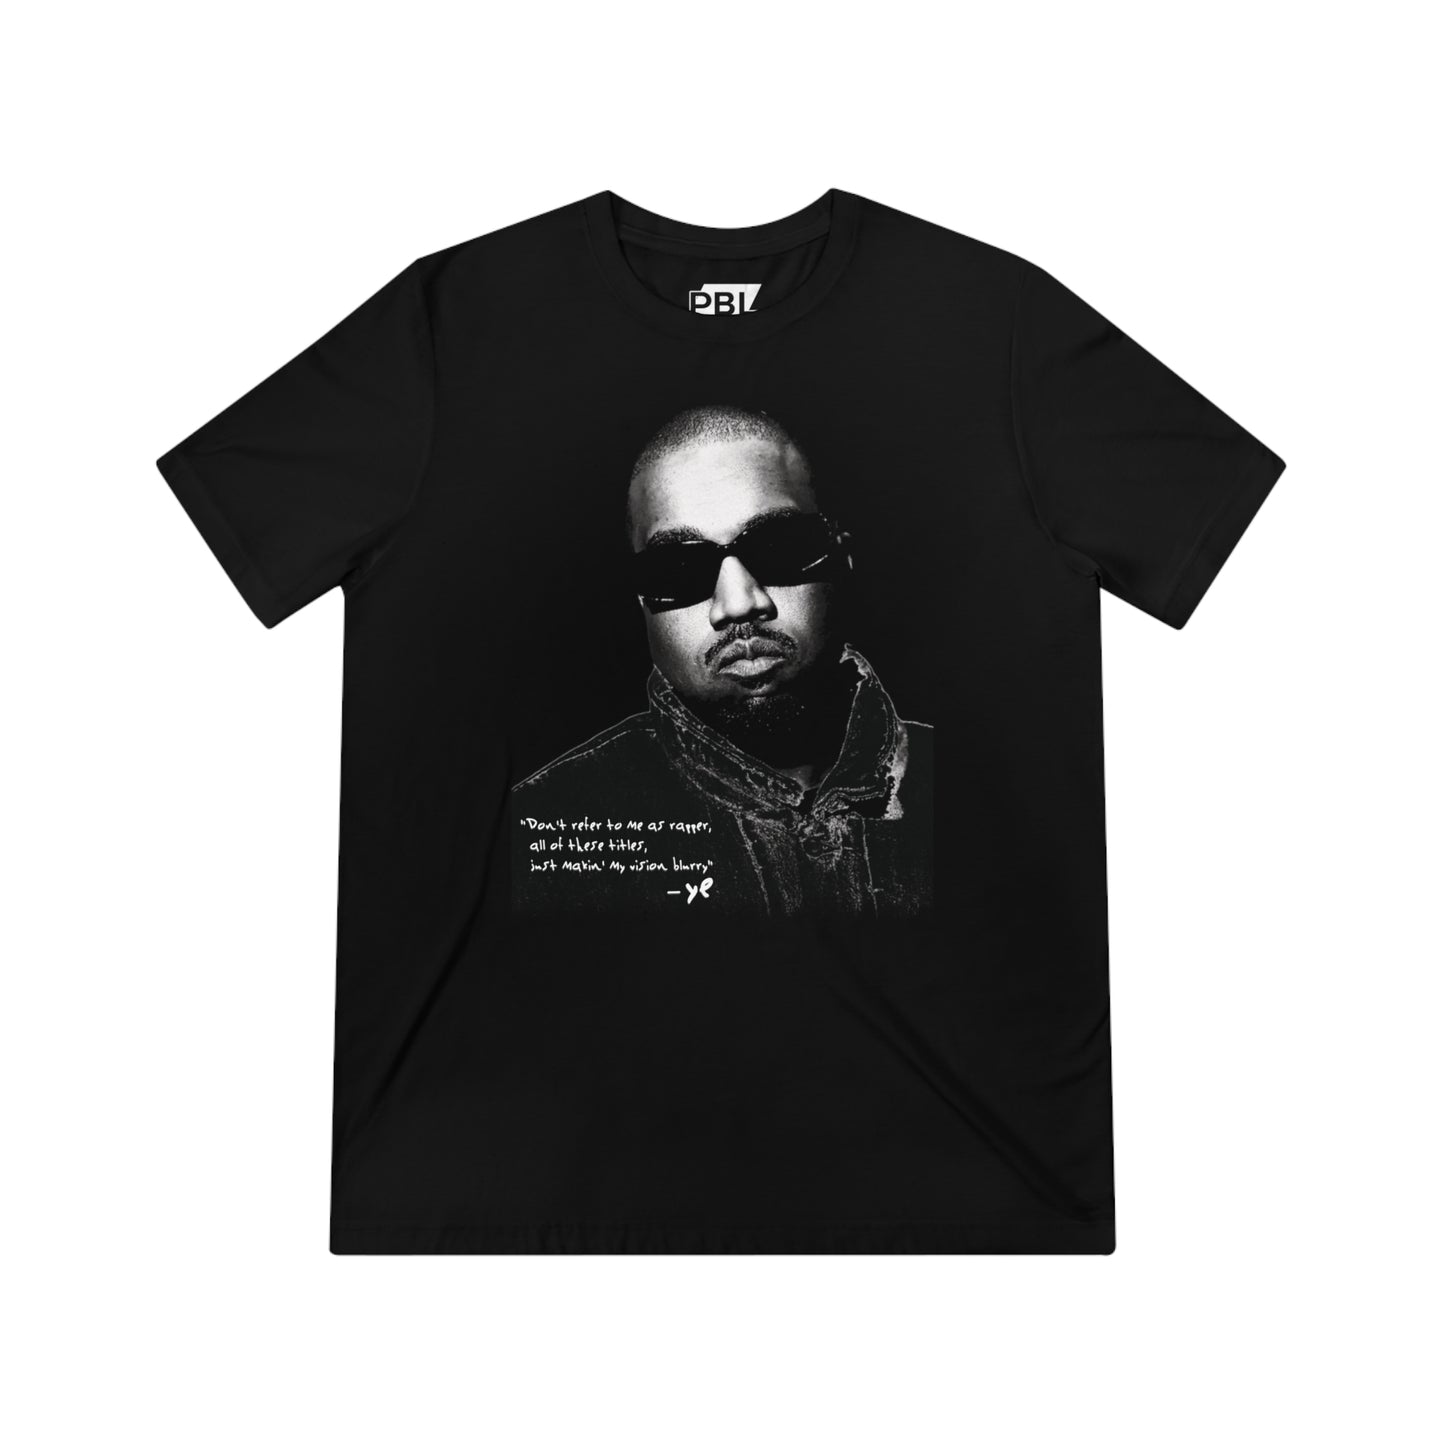 Vision Blurry - Kanye West Unisex T-Shirt